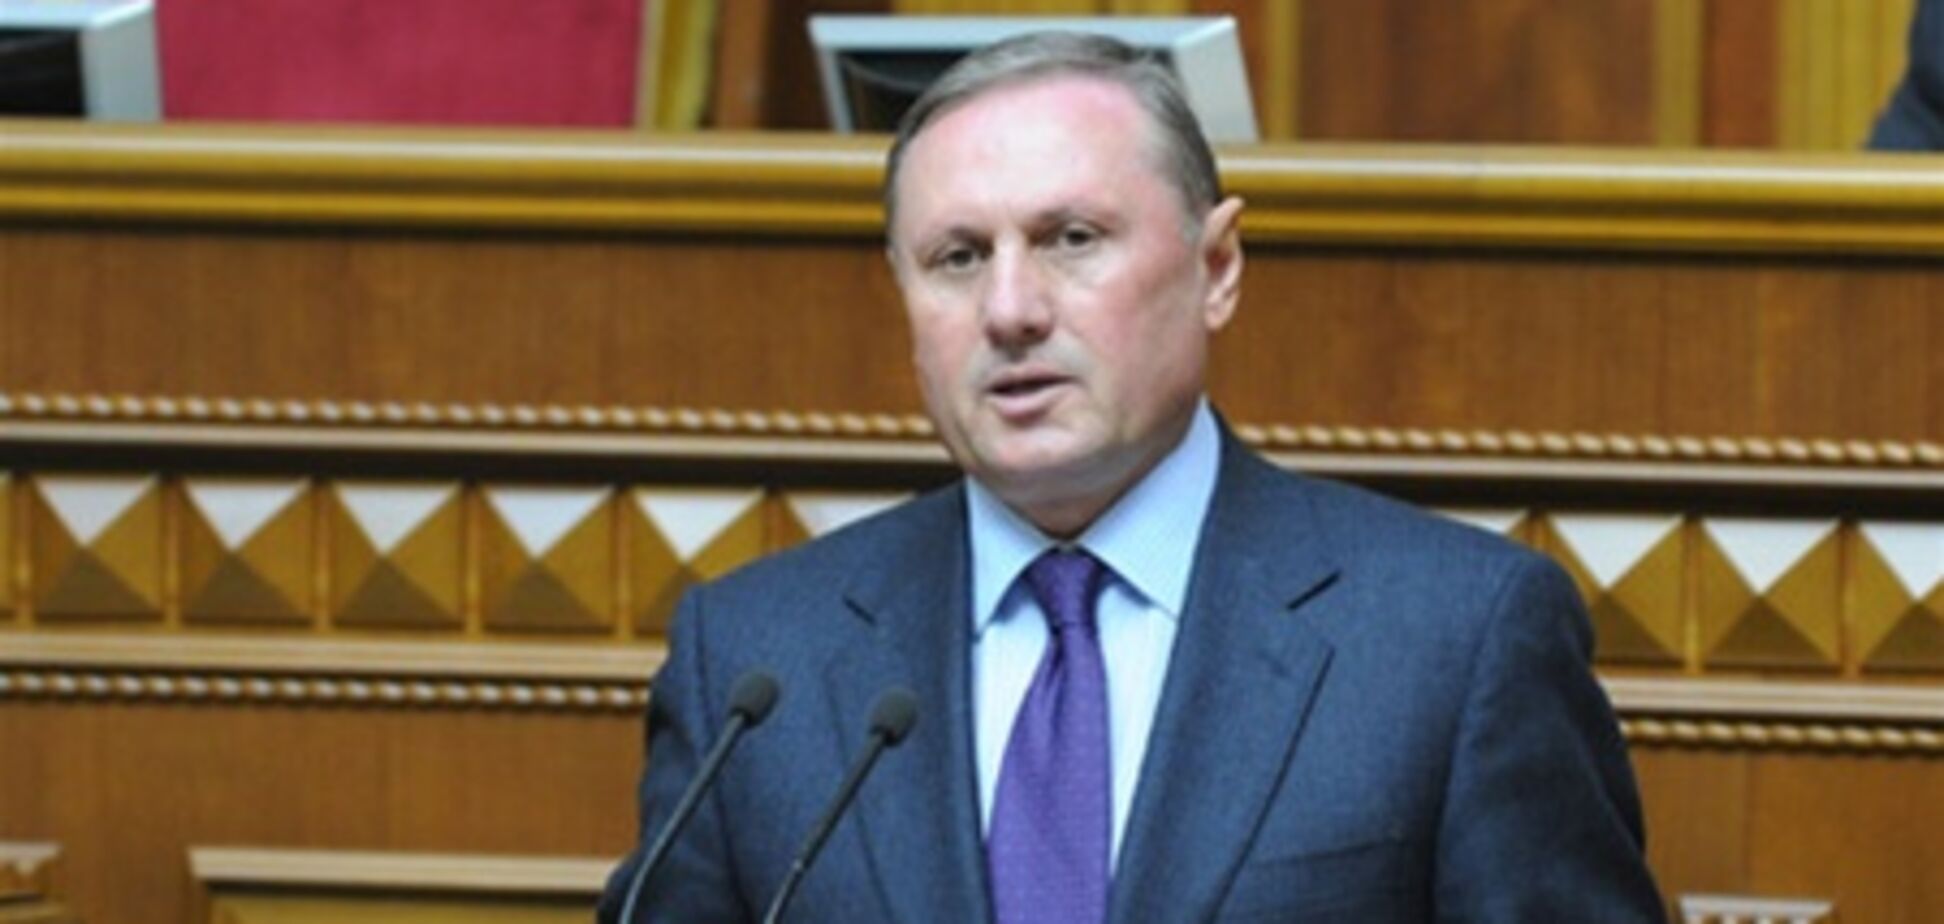 Ефремов сравнил 'обморок' Тимошенко с 'отравлением' Ющенко